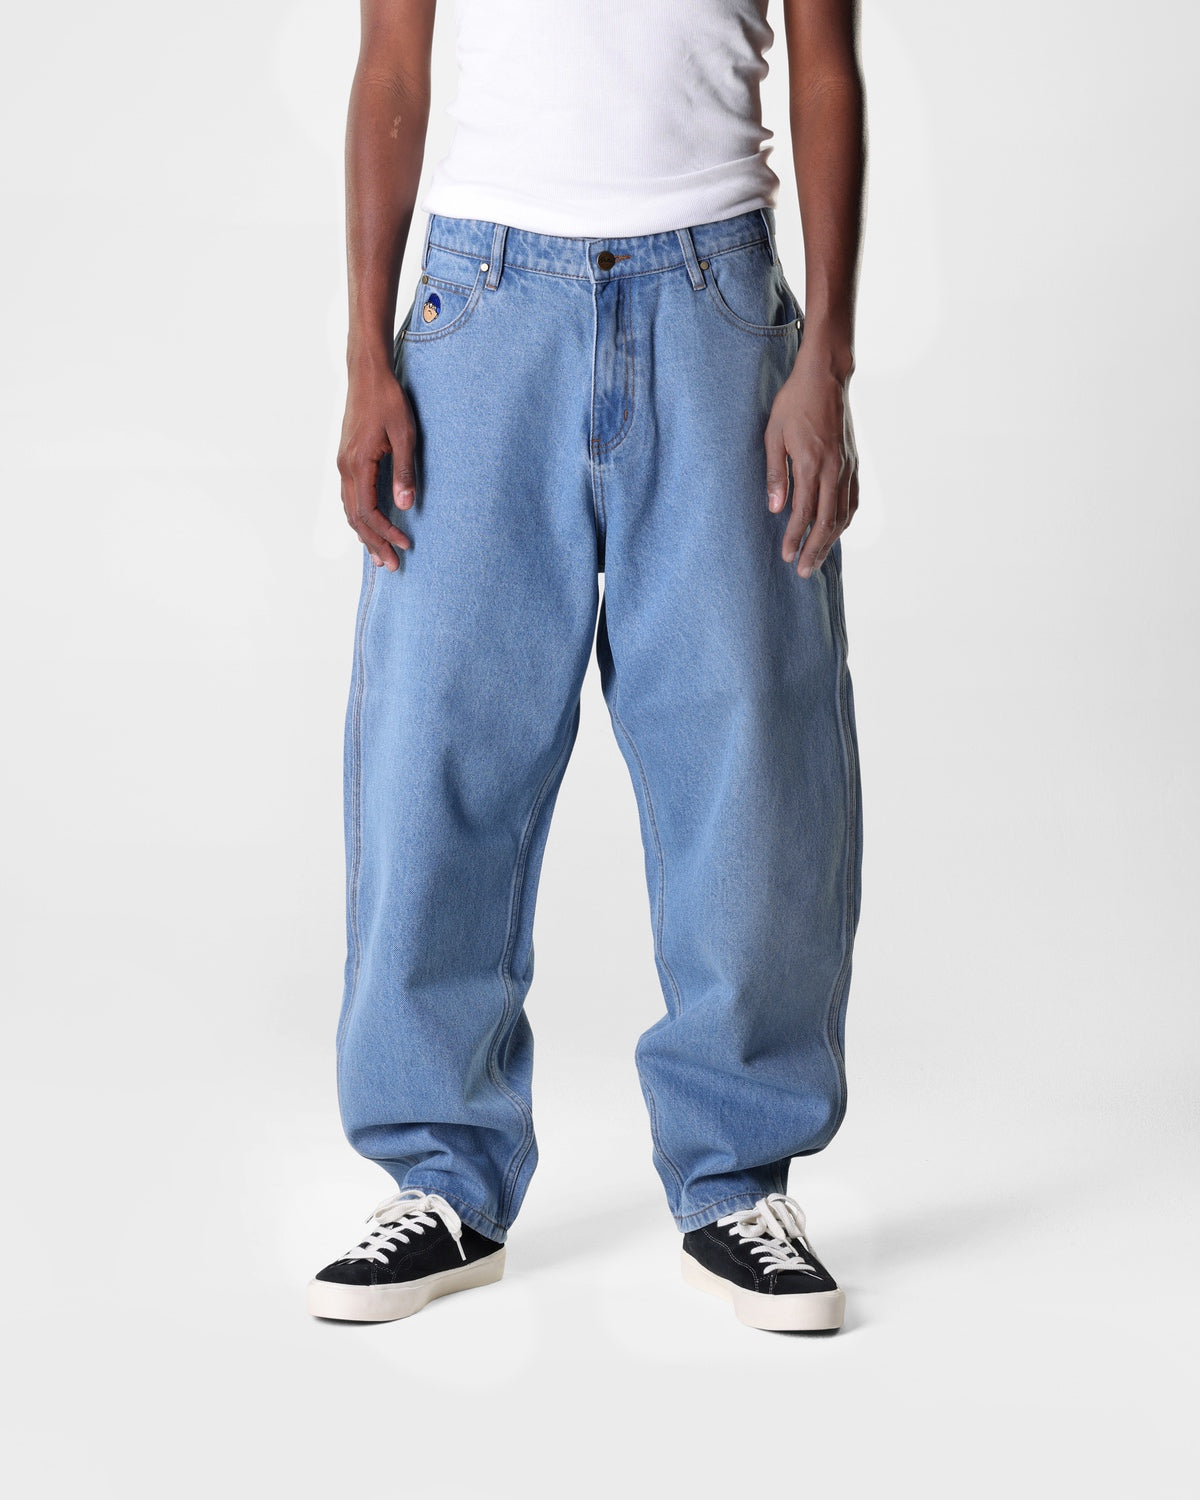 Santosuosso Denim Jeans, Washed Indigo  